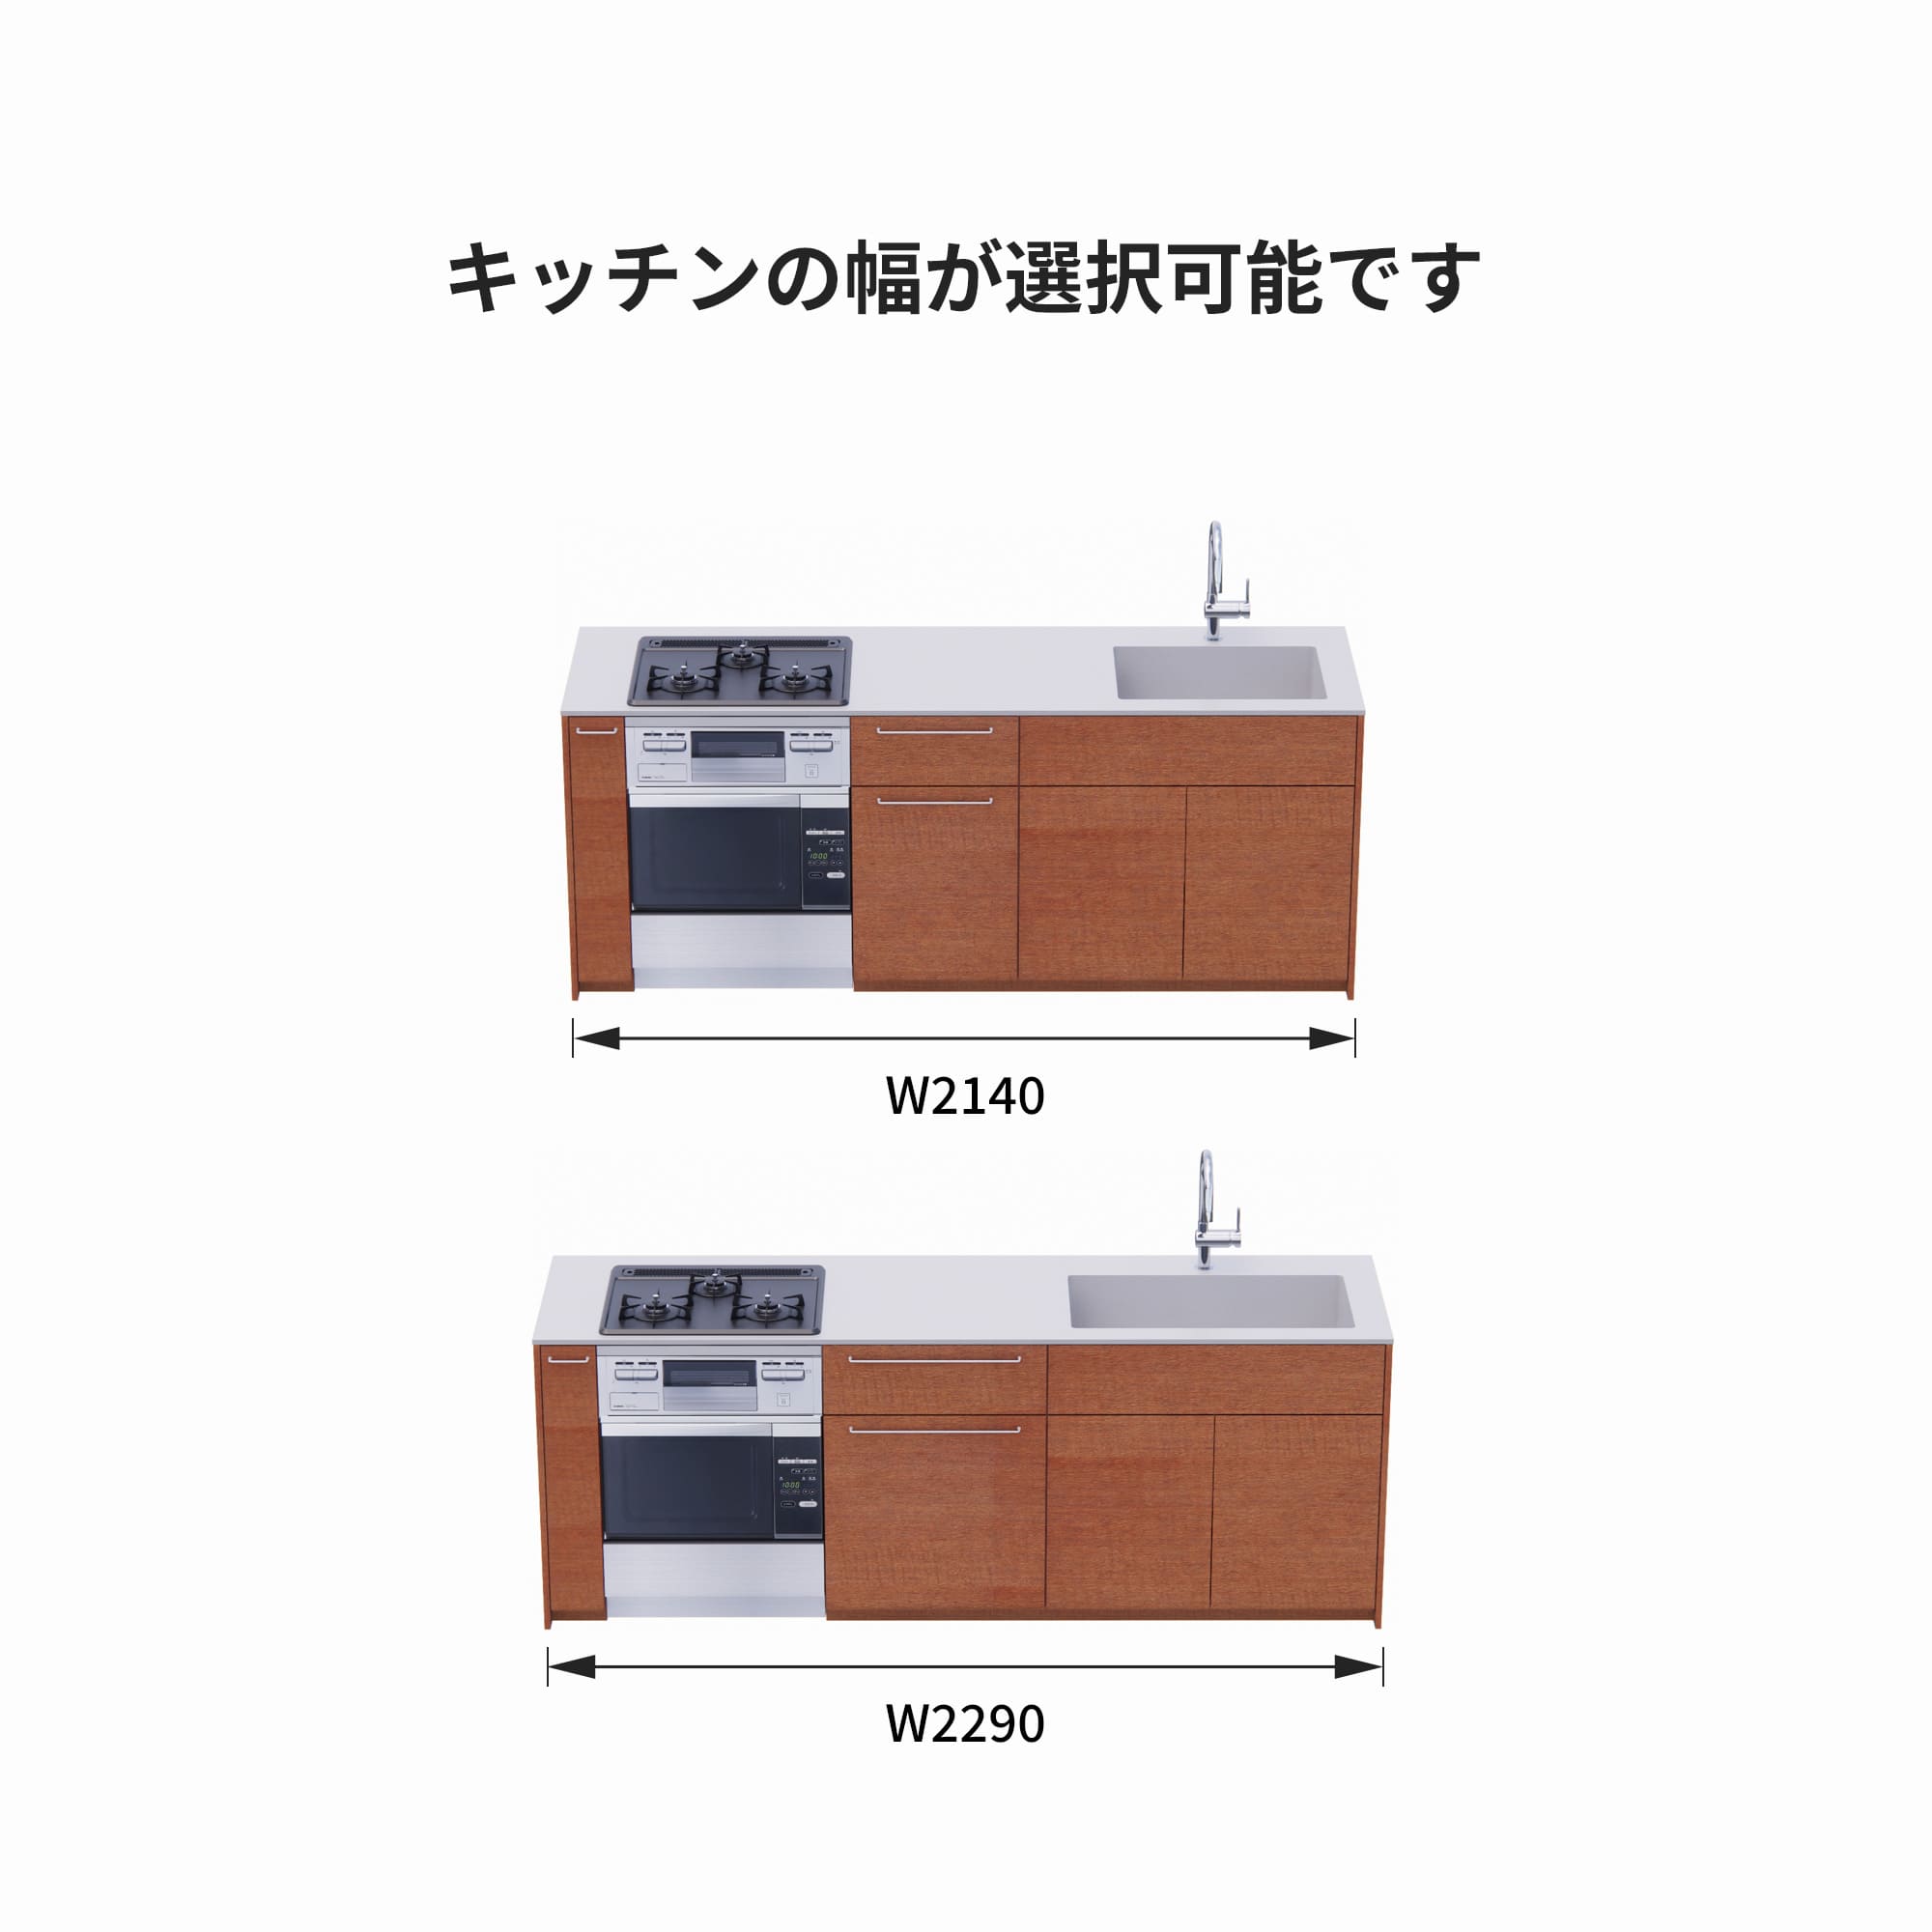 木製システムキッチン 対面型 W2140～2290・コンロあり / オーブンあり / 食洗機なし KB-KC022-37-G183 サイズはW2140と2290から選択可能です